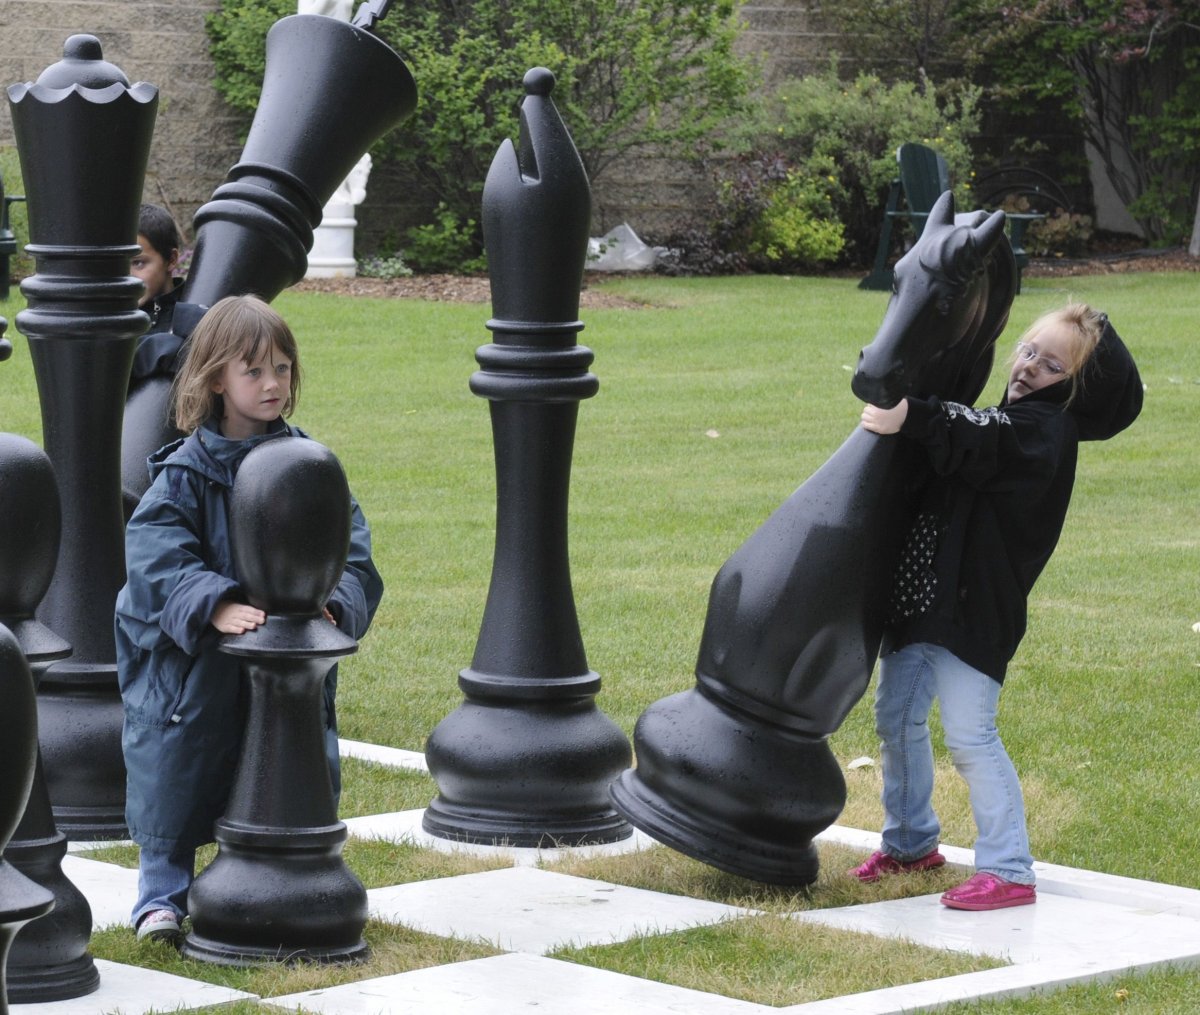 Самые большие шахматы в мире